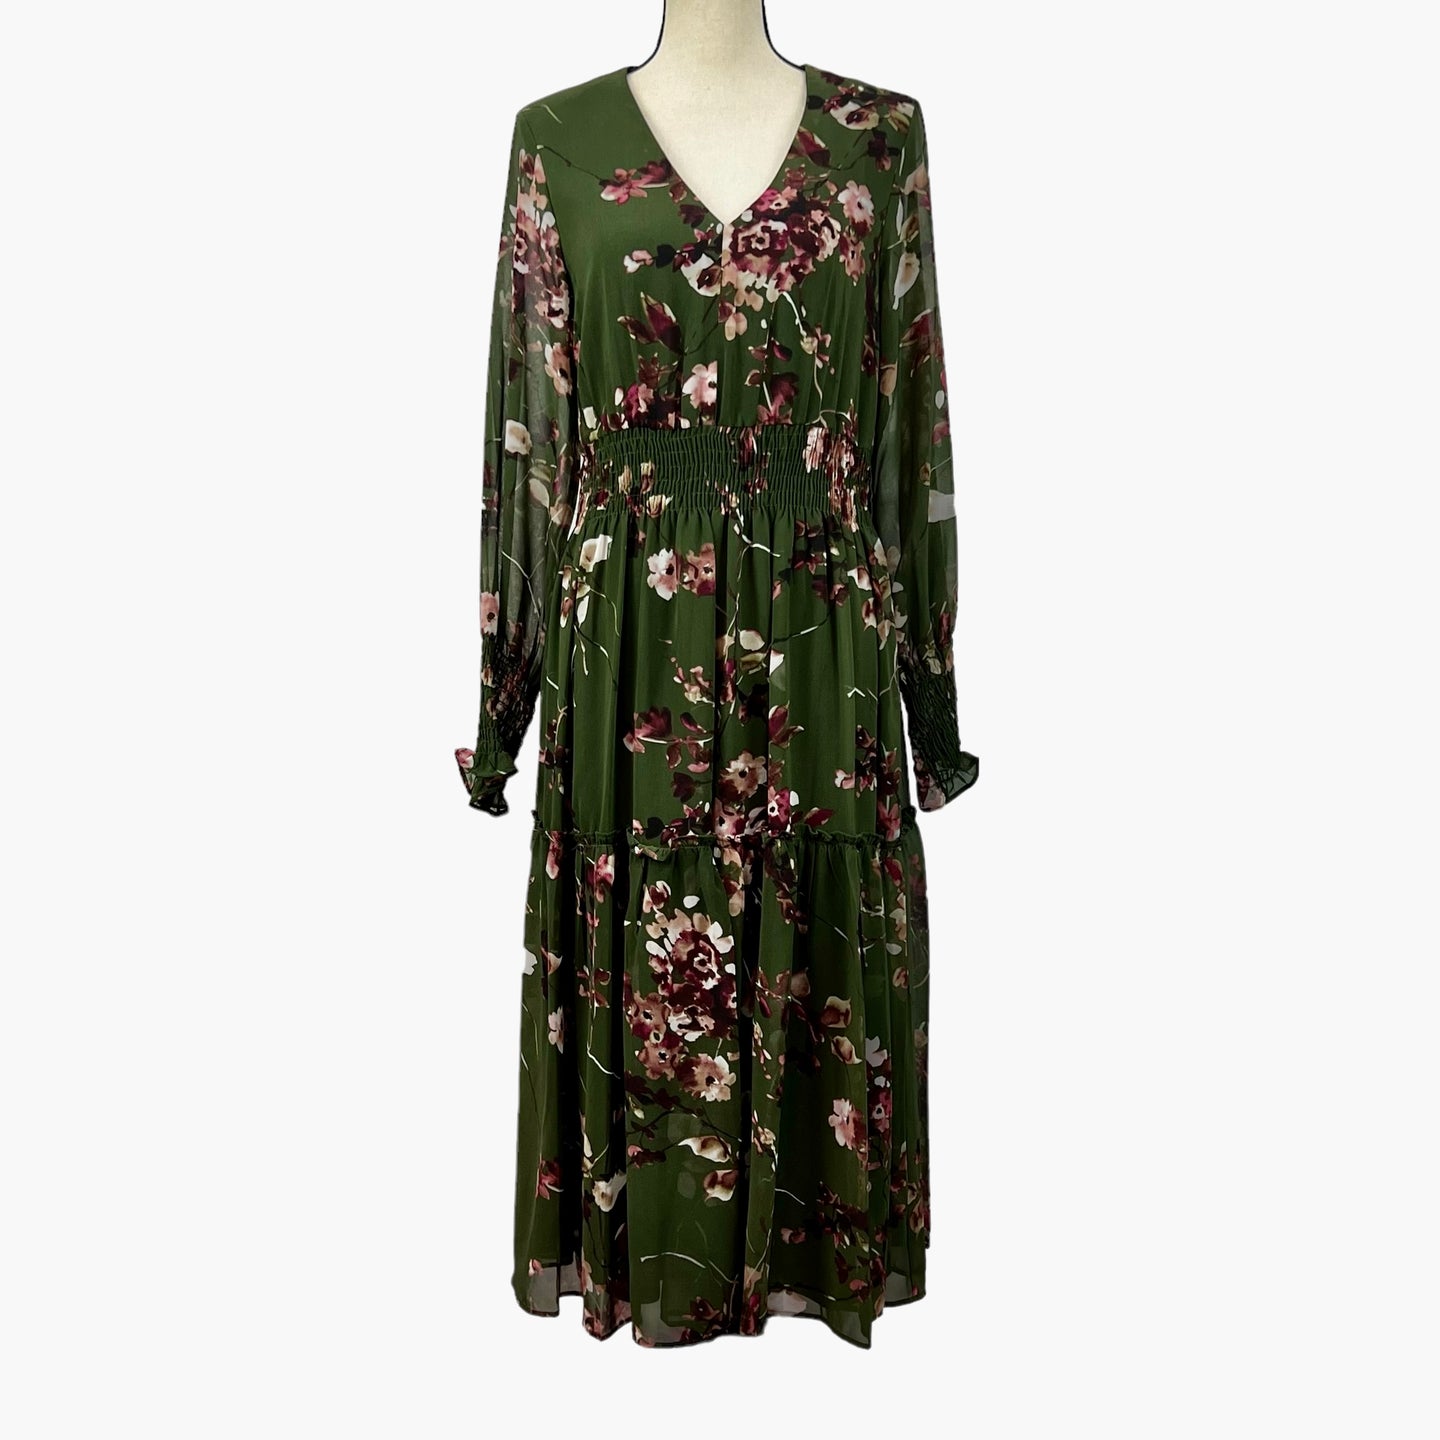 Taylor Floral Print V-Neck Dress Green Size 12